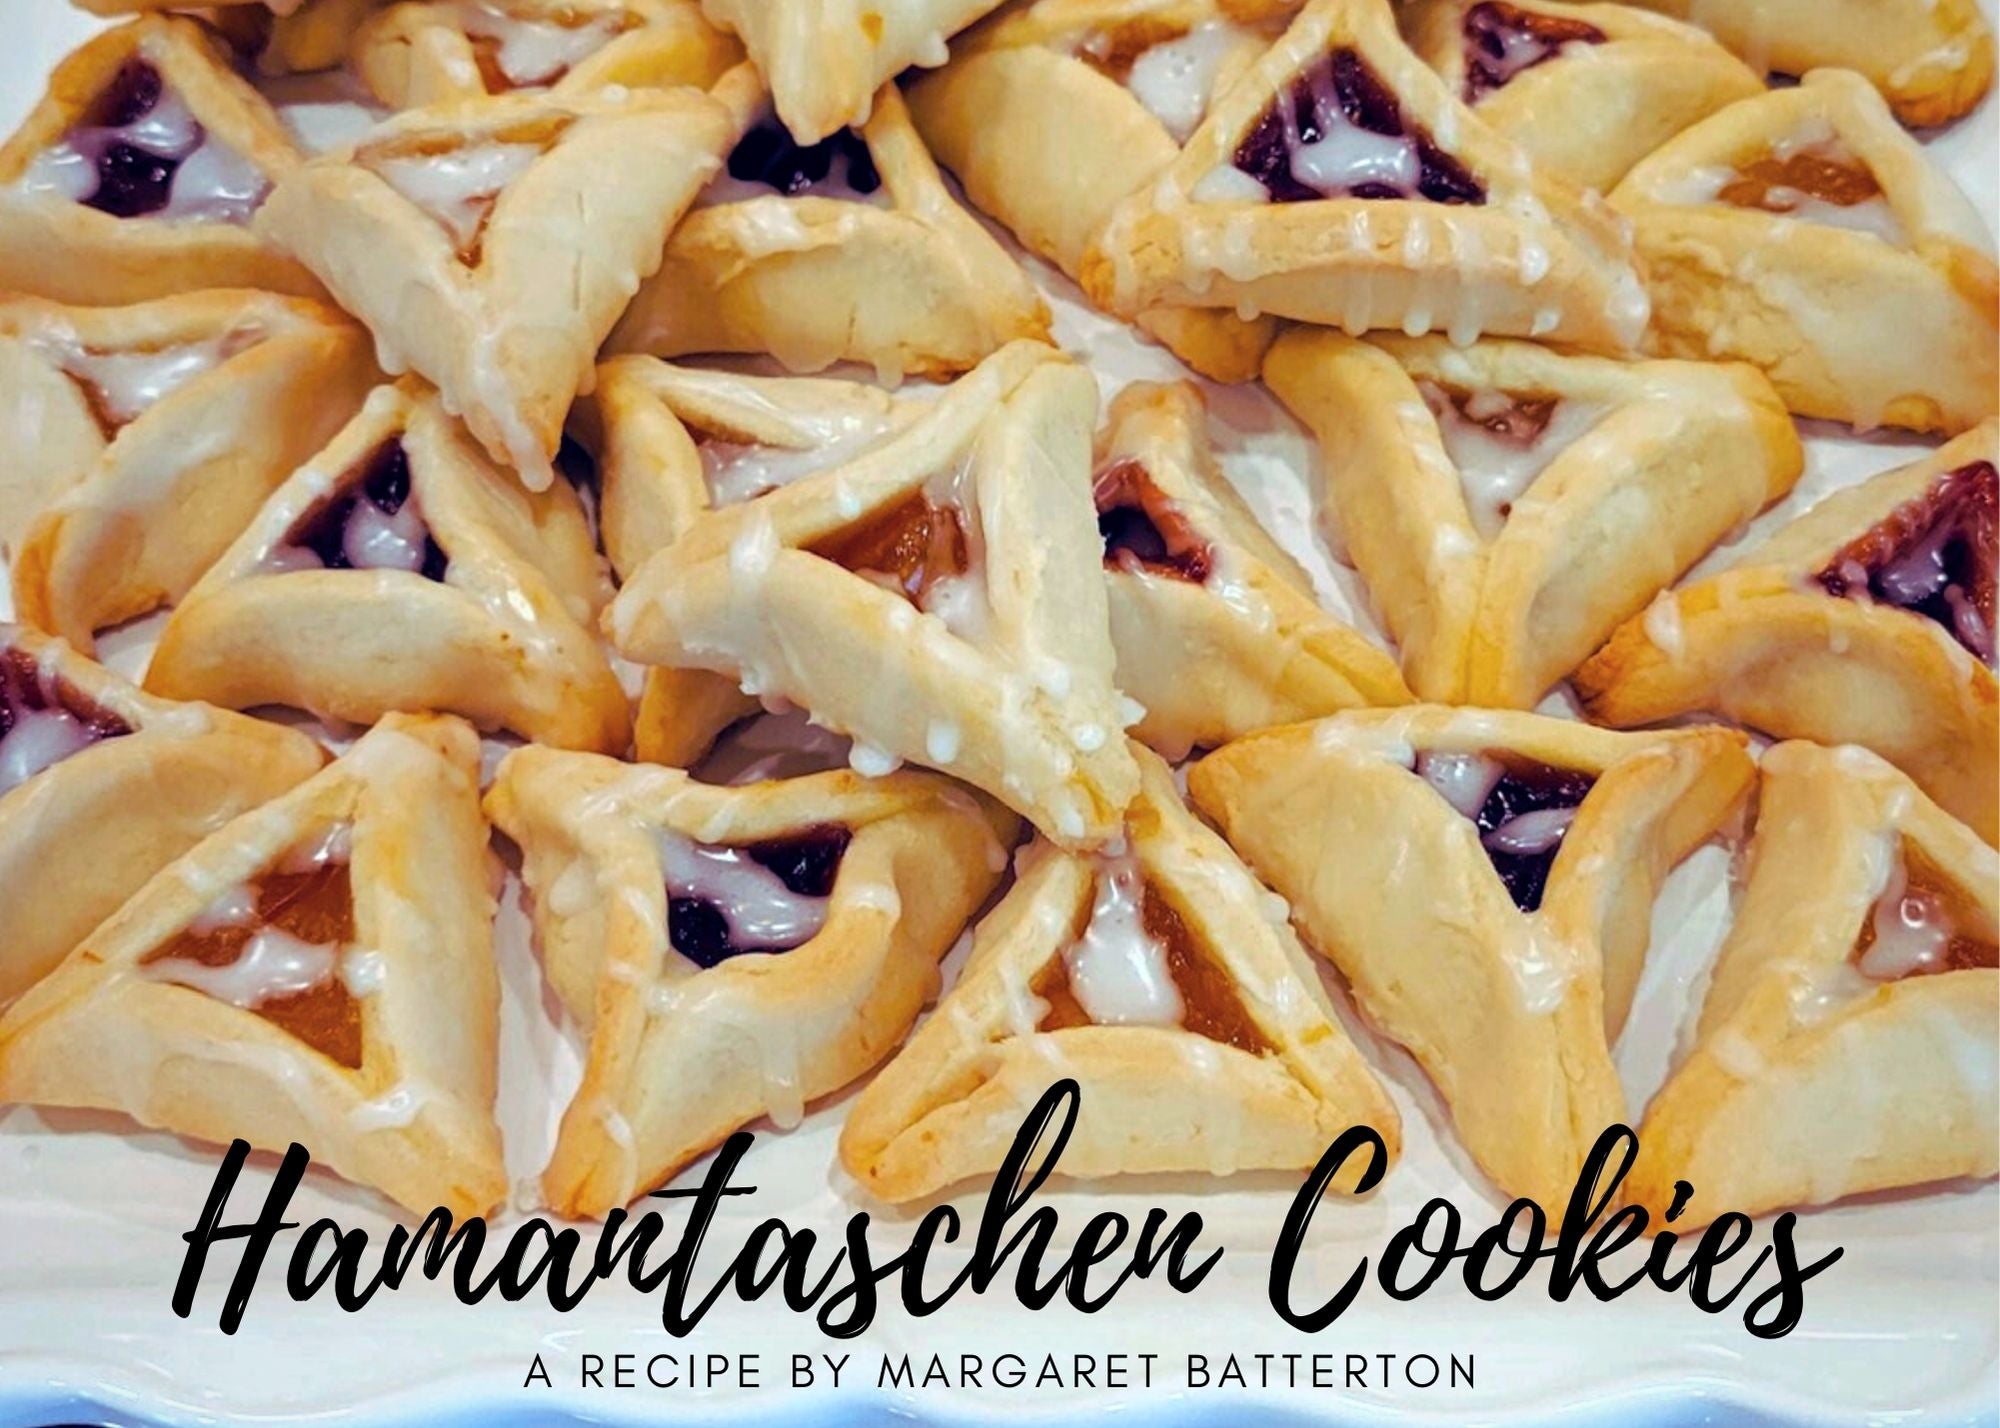 Margaret Batterton's Hamantaschen cookies -ORIGINAL BLEND